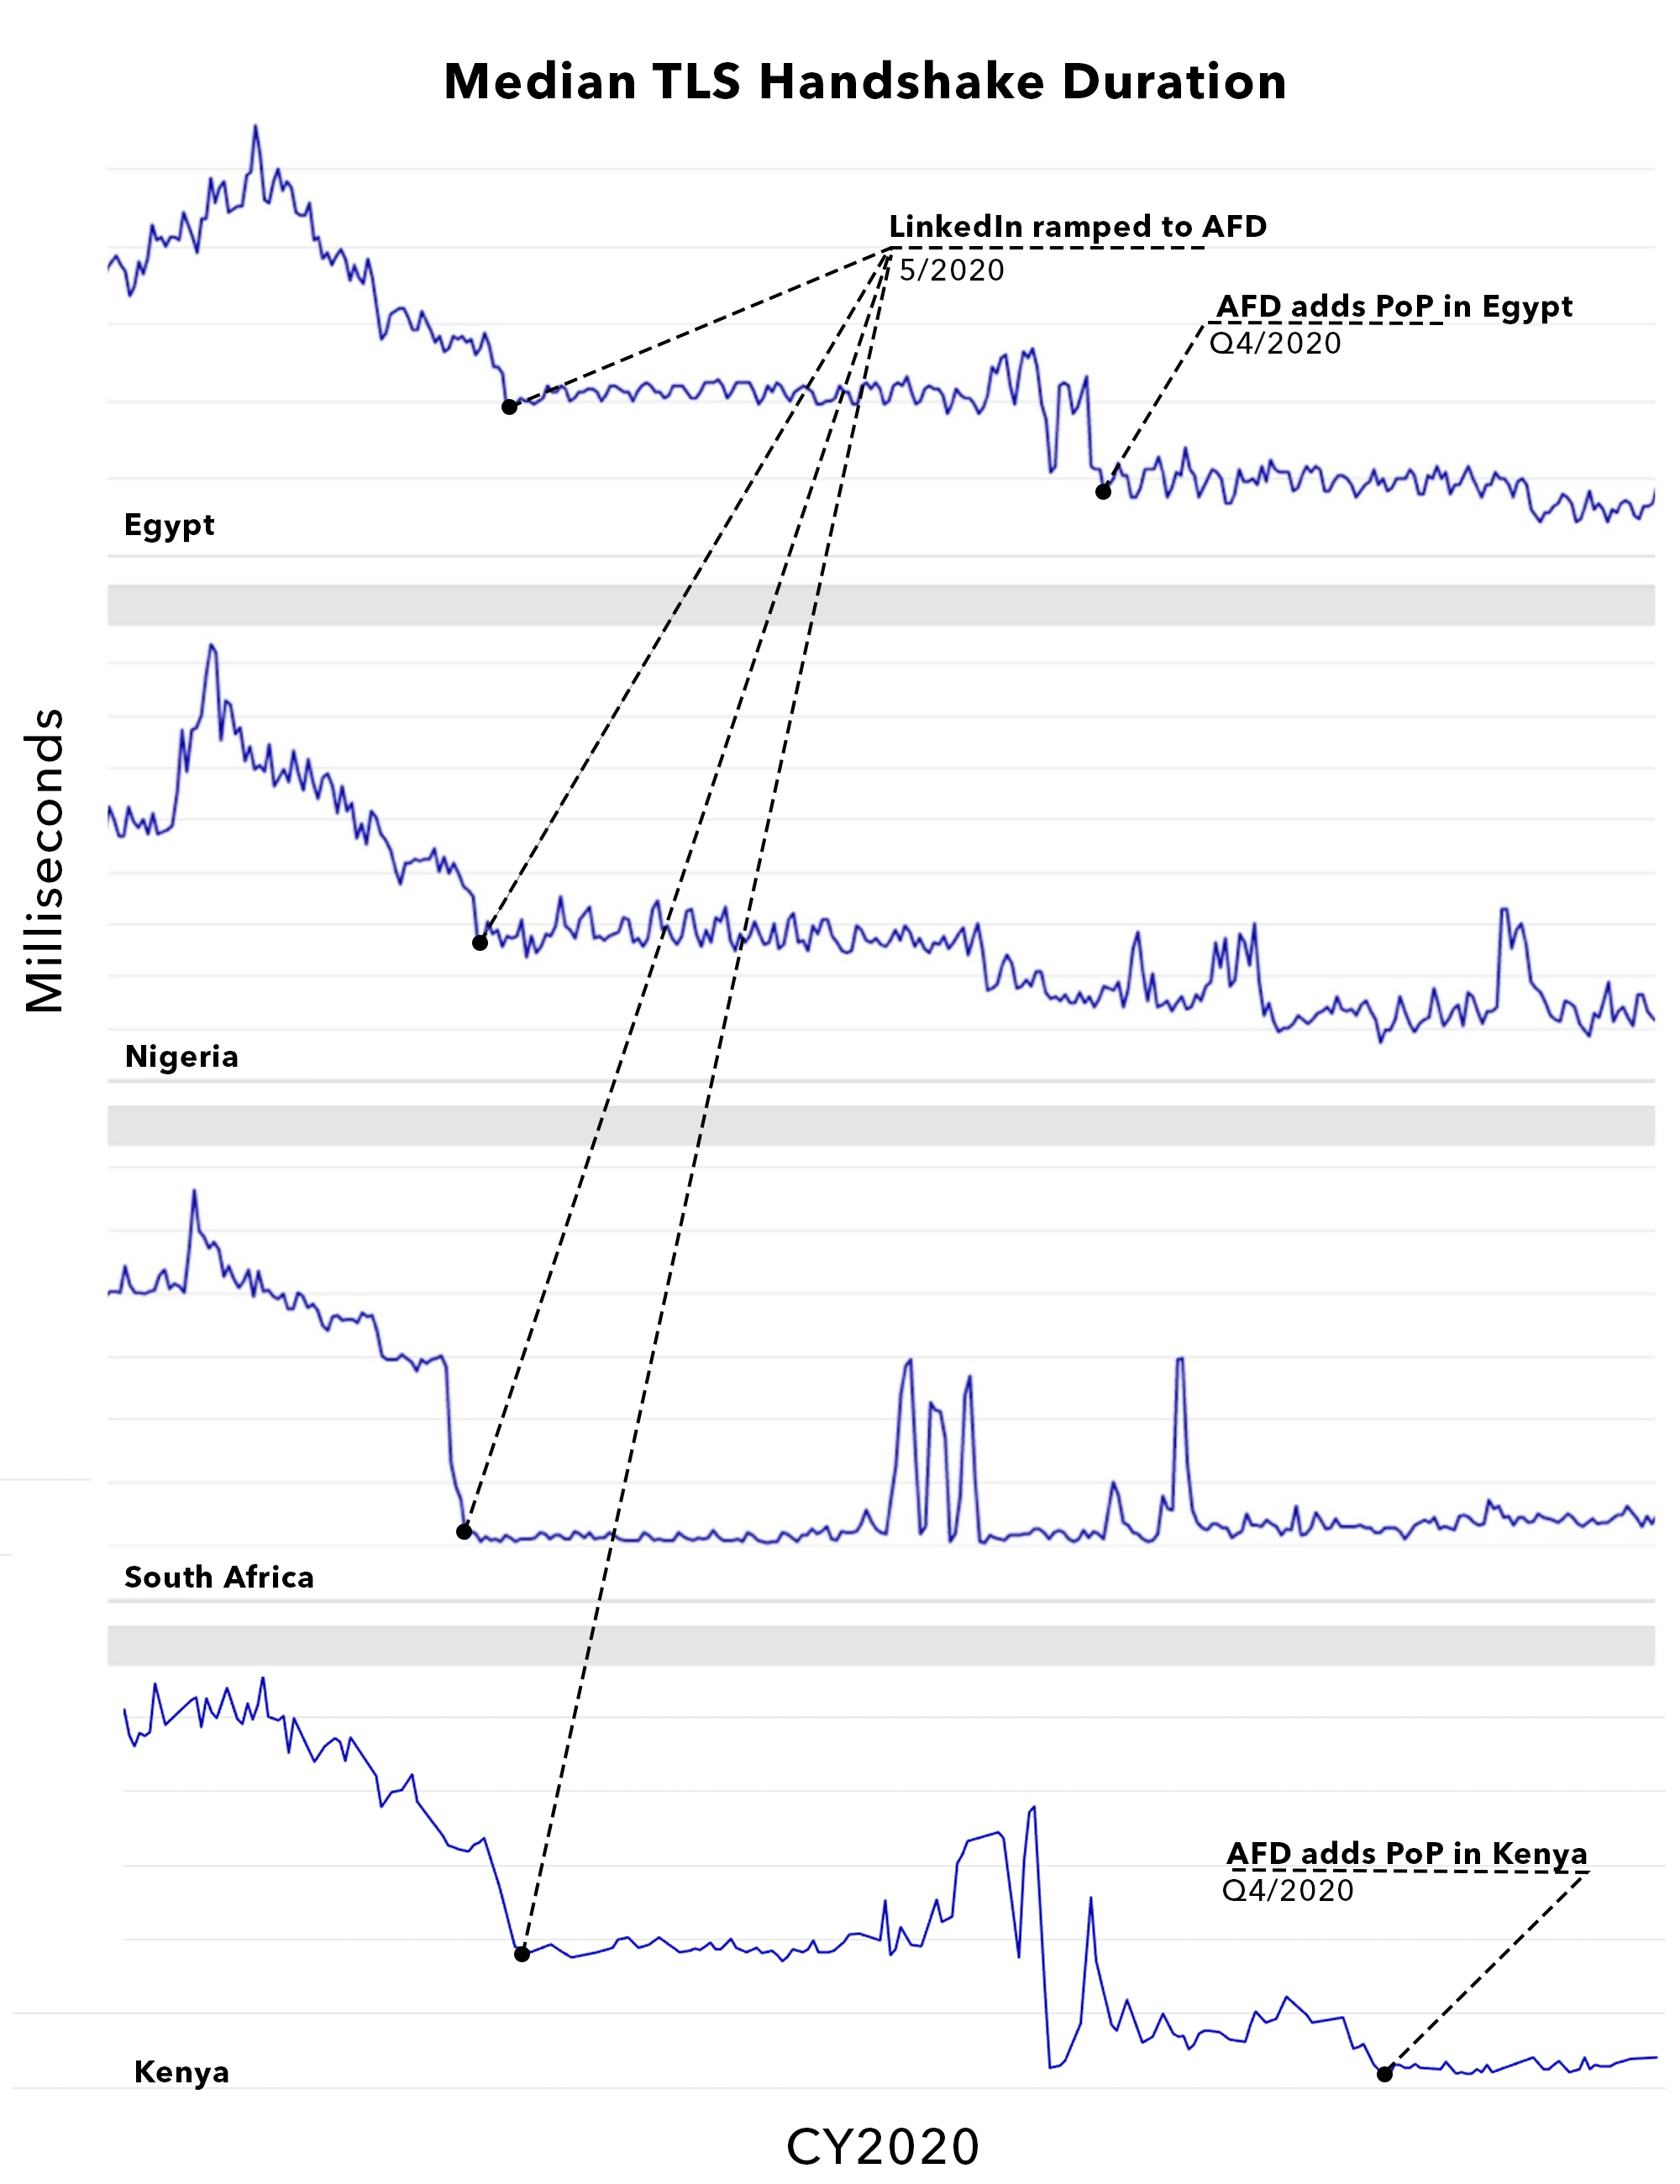 figure-of-median-TLS-handshake-durations-across-2020